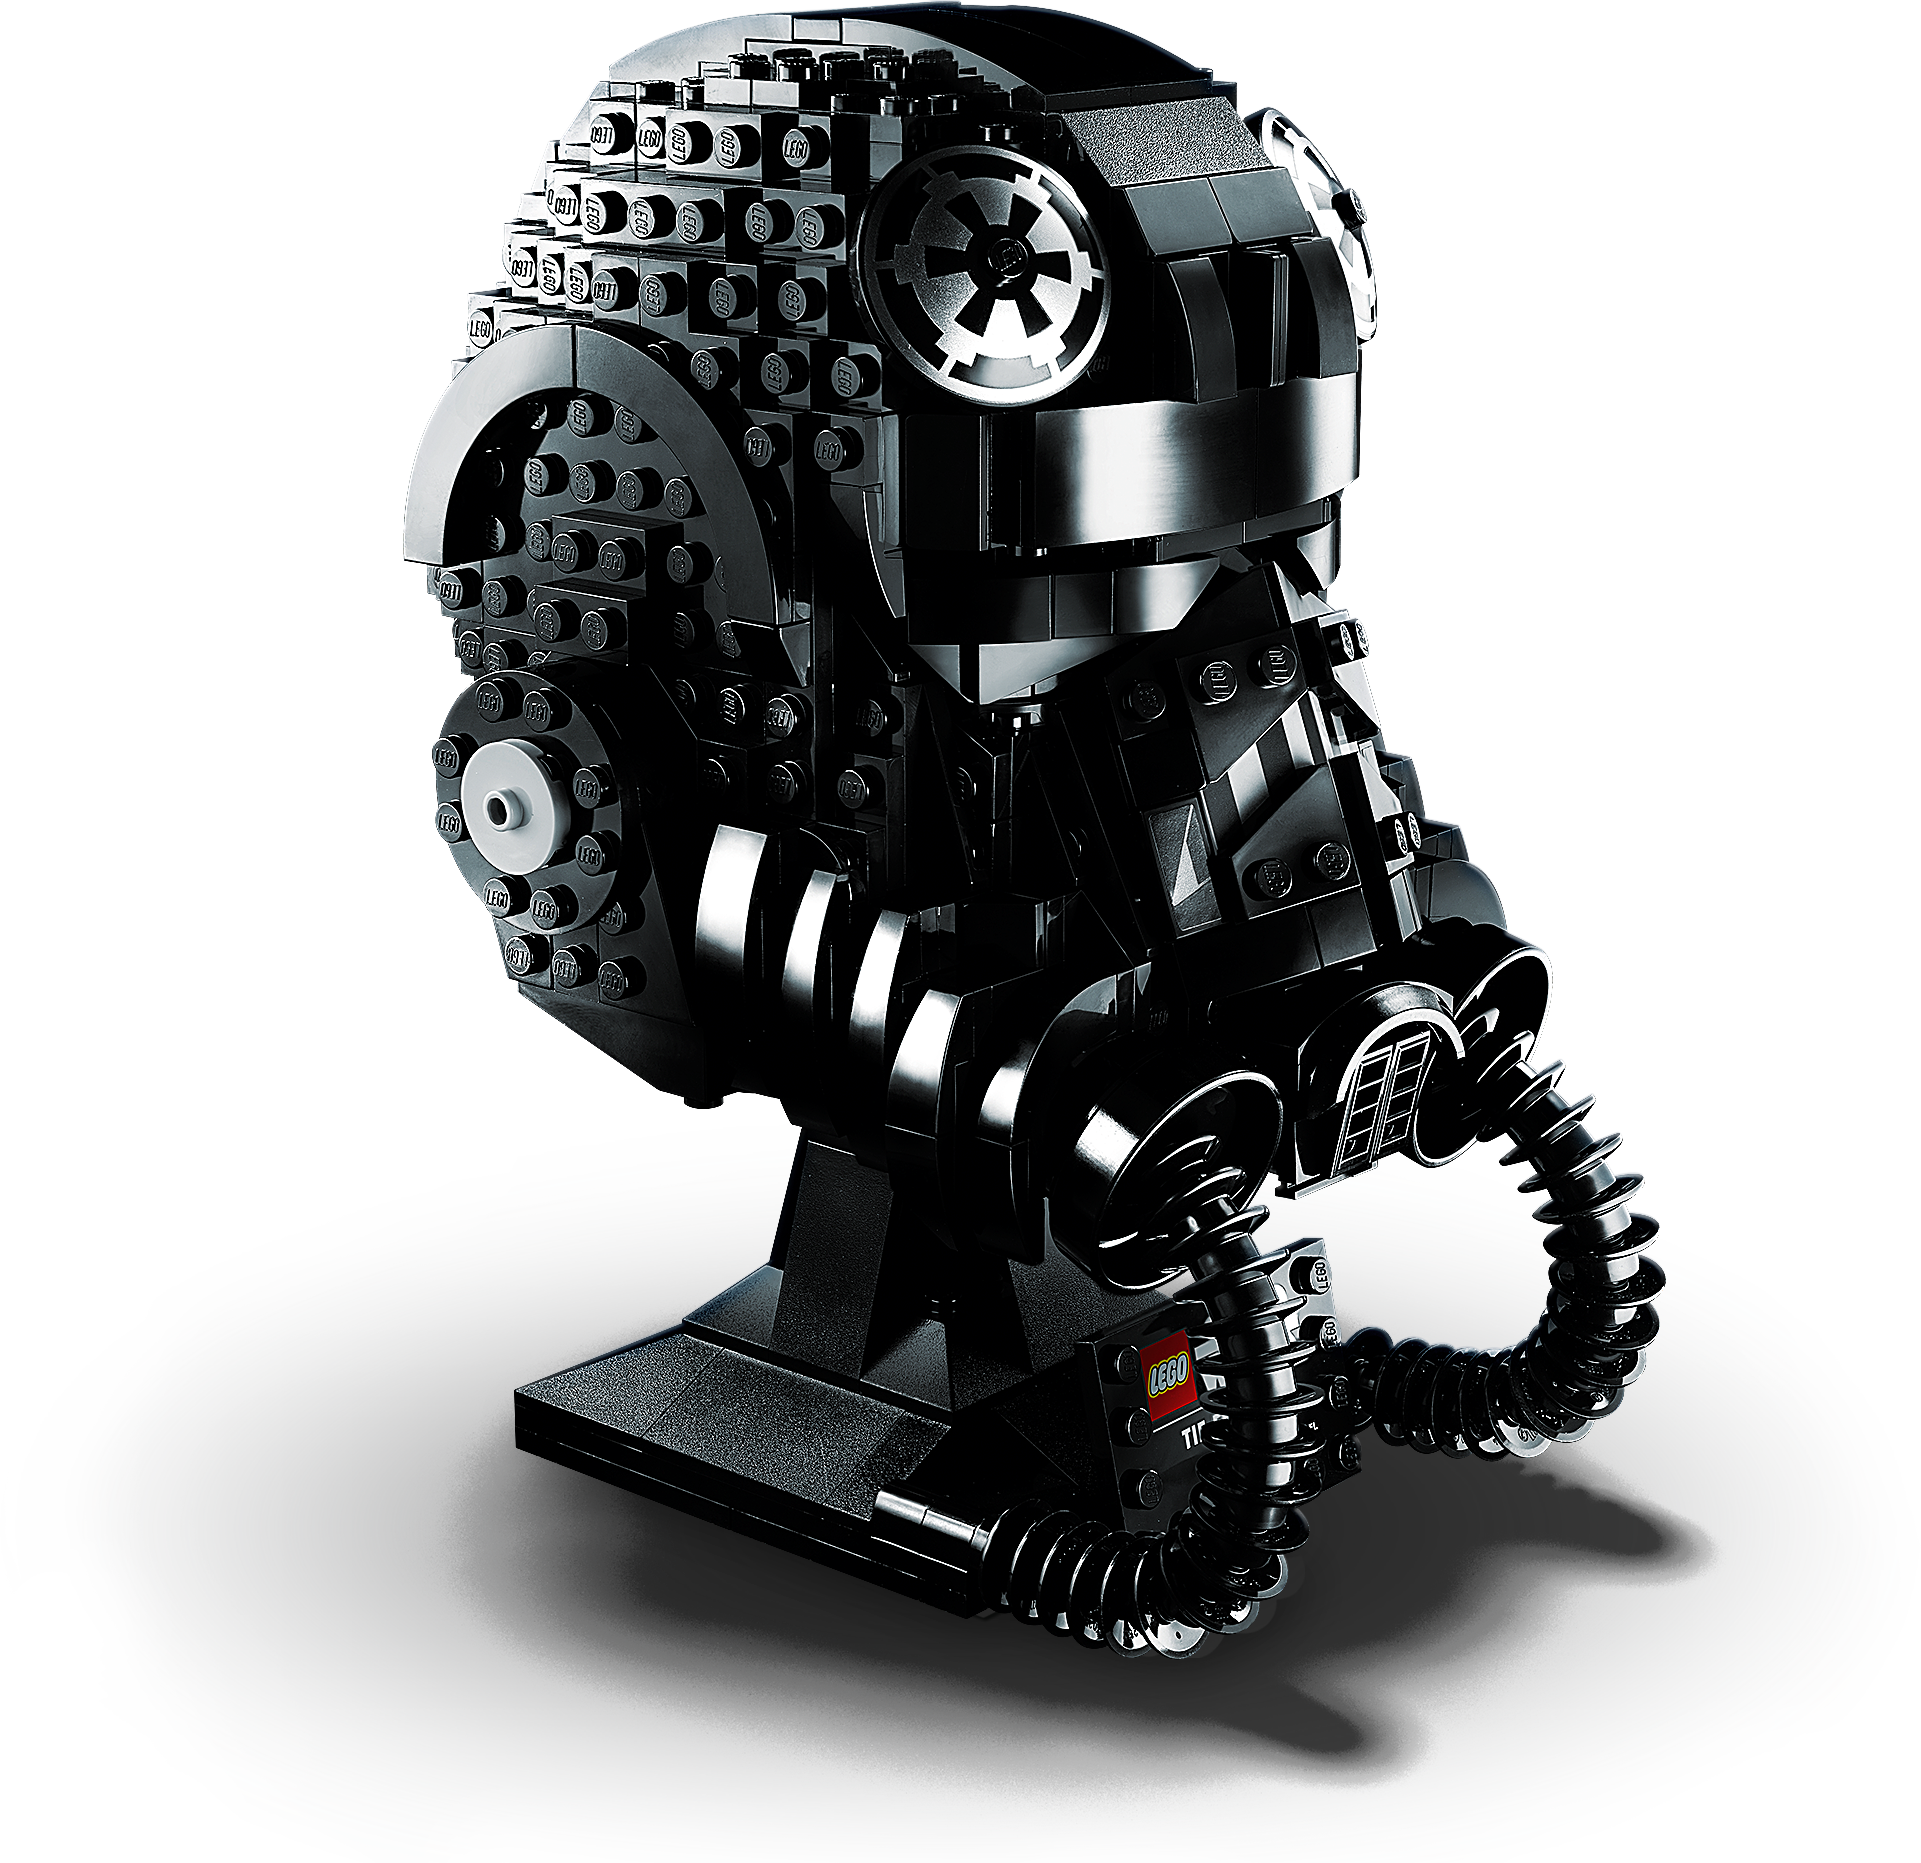 75274 Lego Star Wars Tie piloto conjunto de exhibición de casco